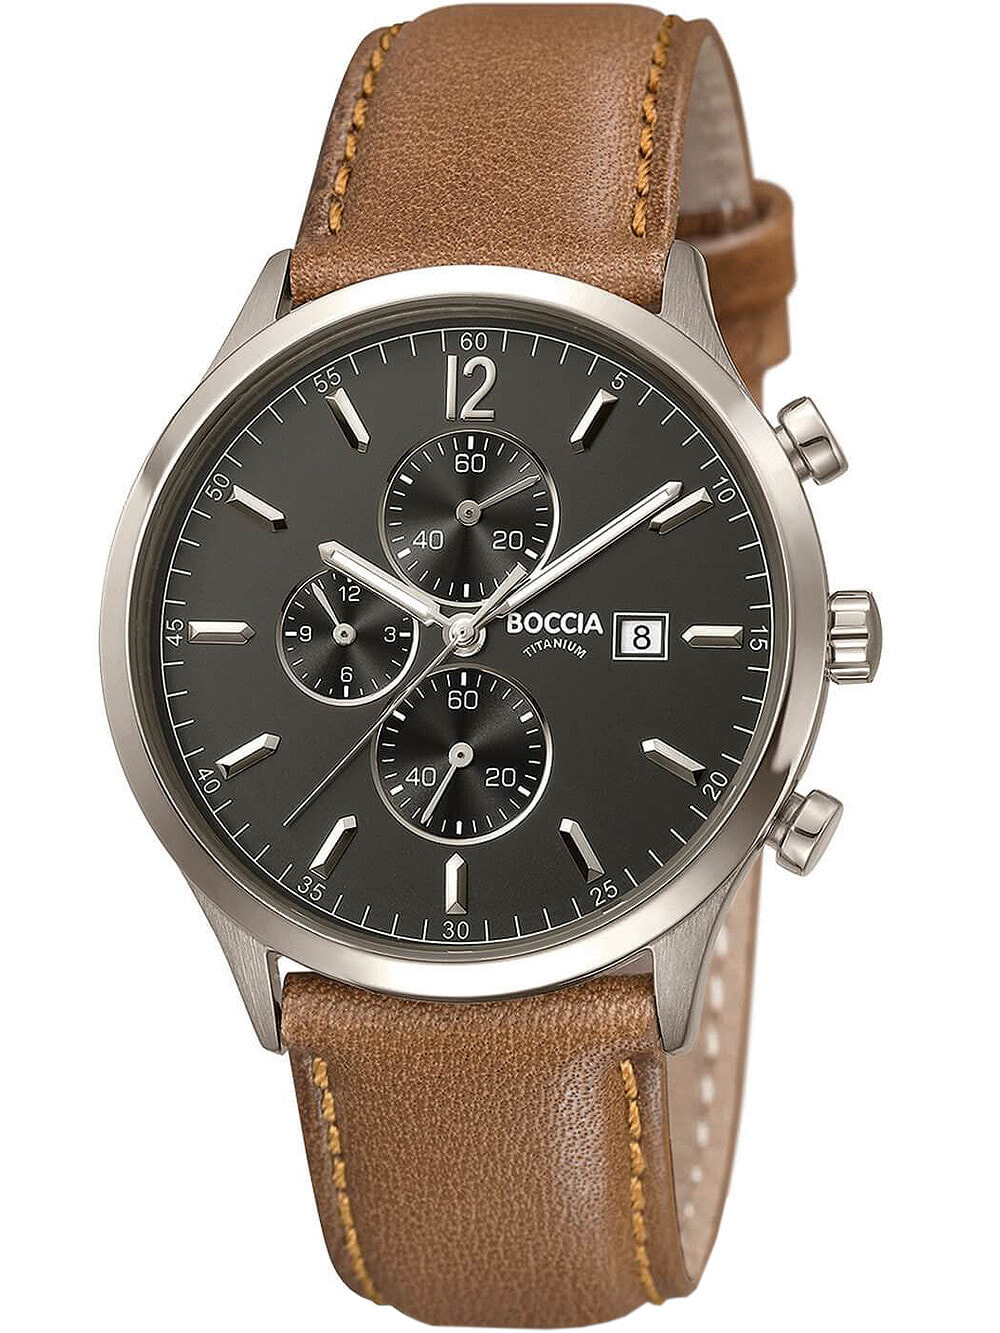 Мужские наручные часы с коричневым кожаным ремешком Boccia 3753-04 mens watch chronograph titanium 42mm 5ATM